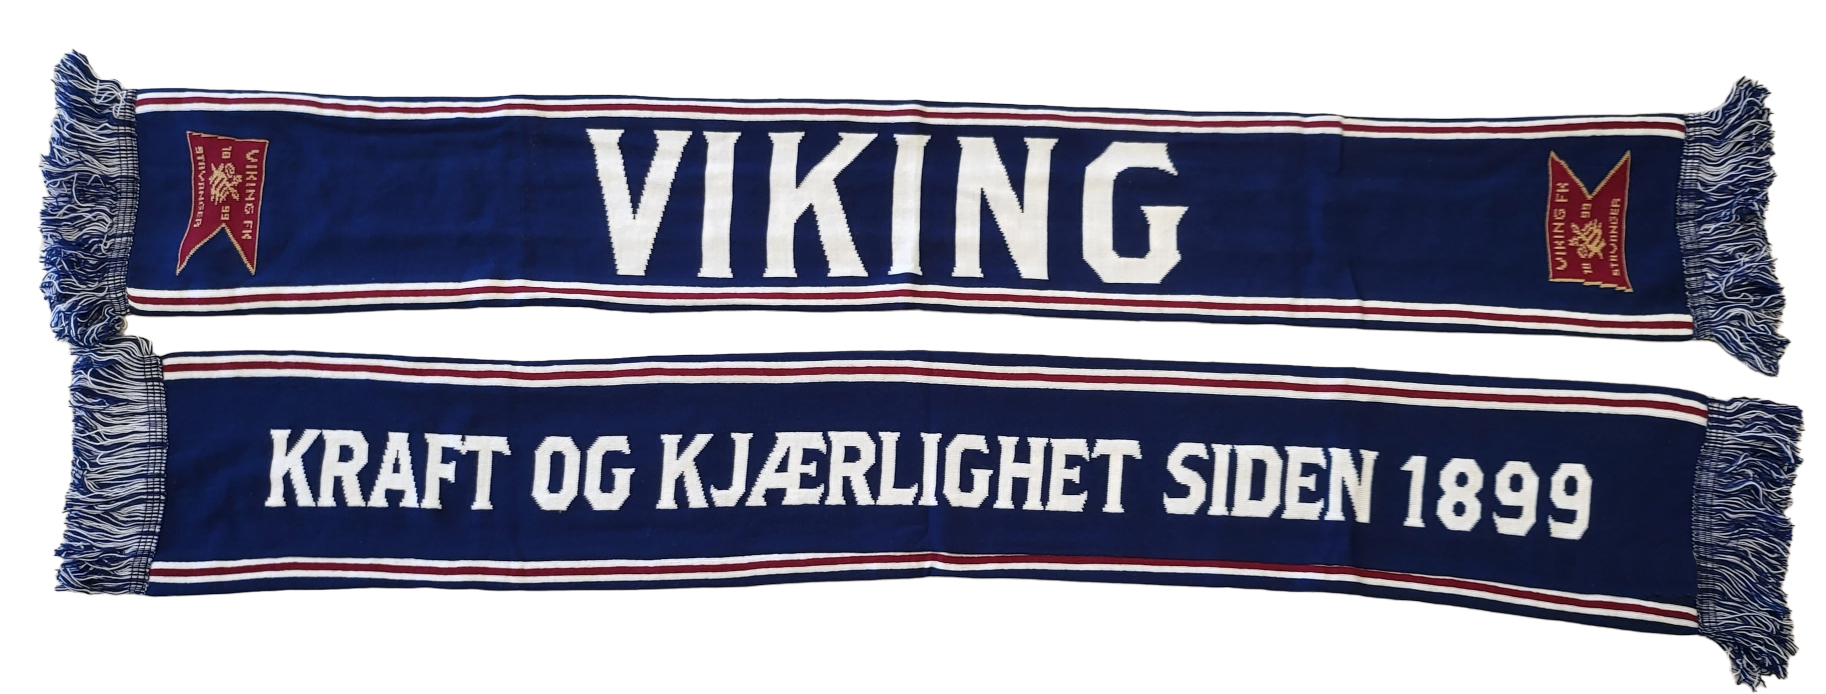 Skjerf - Viking + Kraft og kjærlighet.